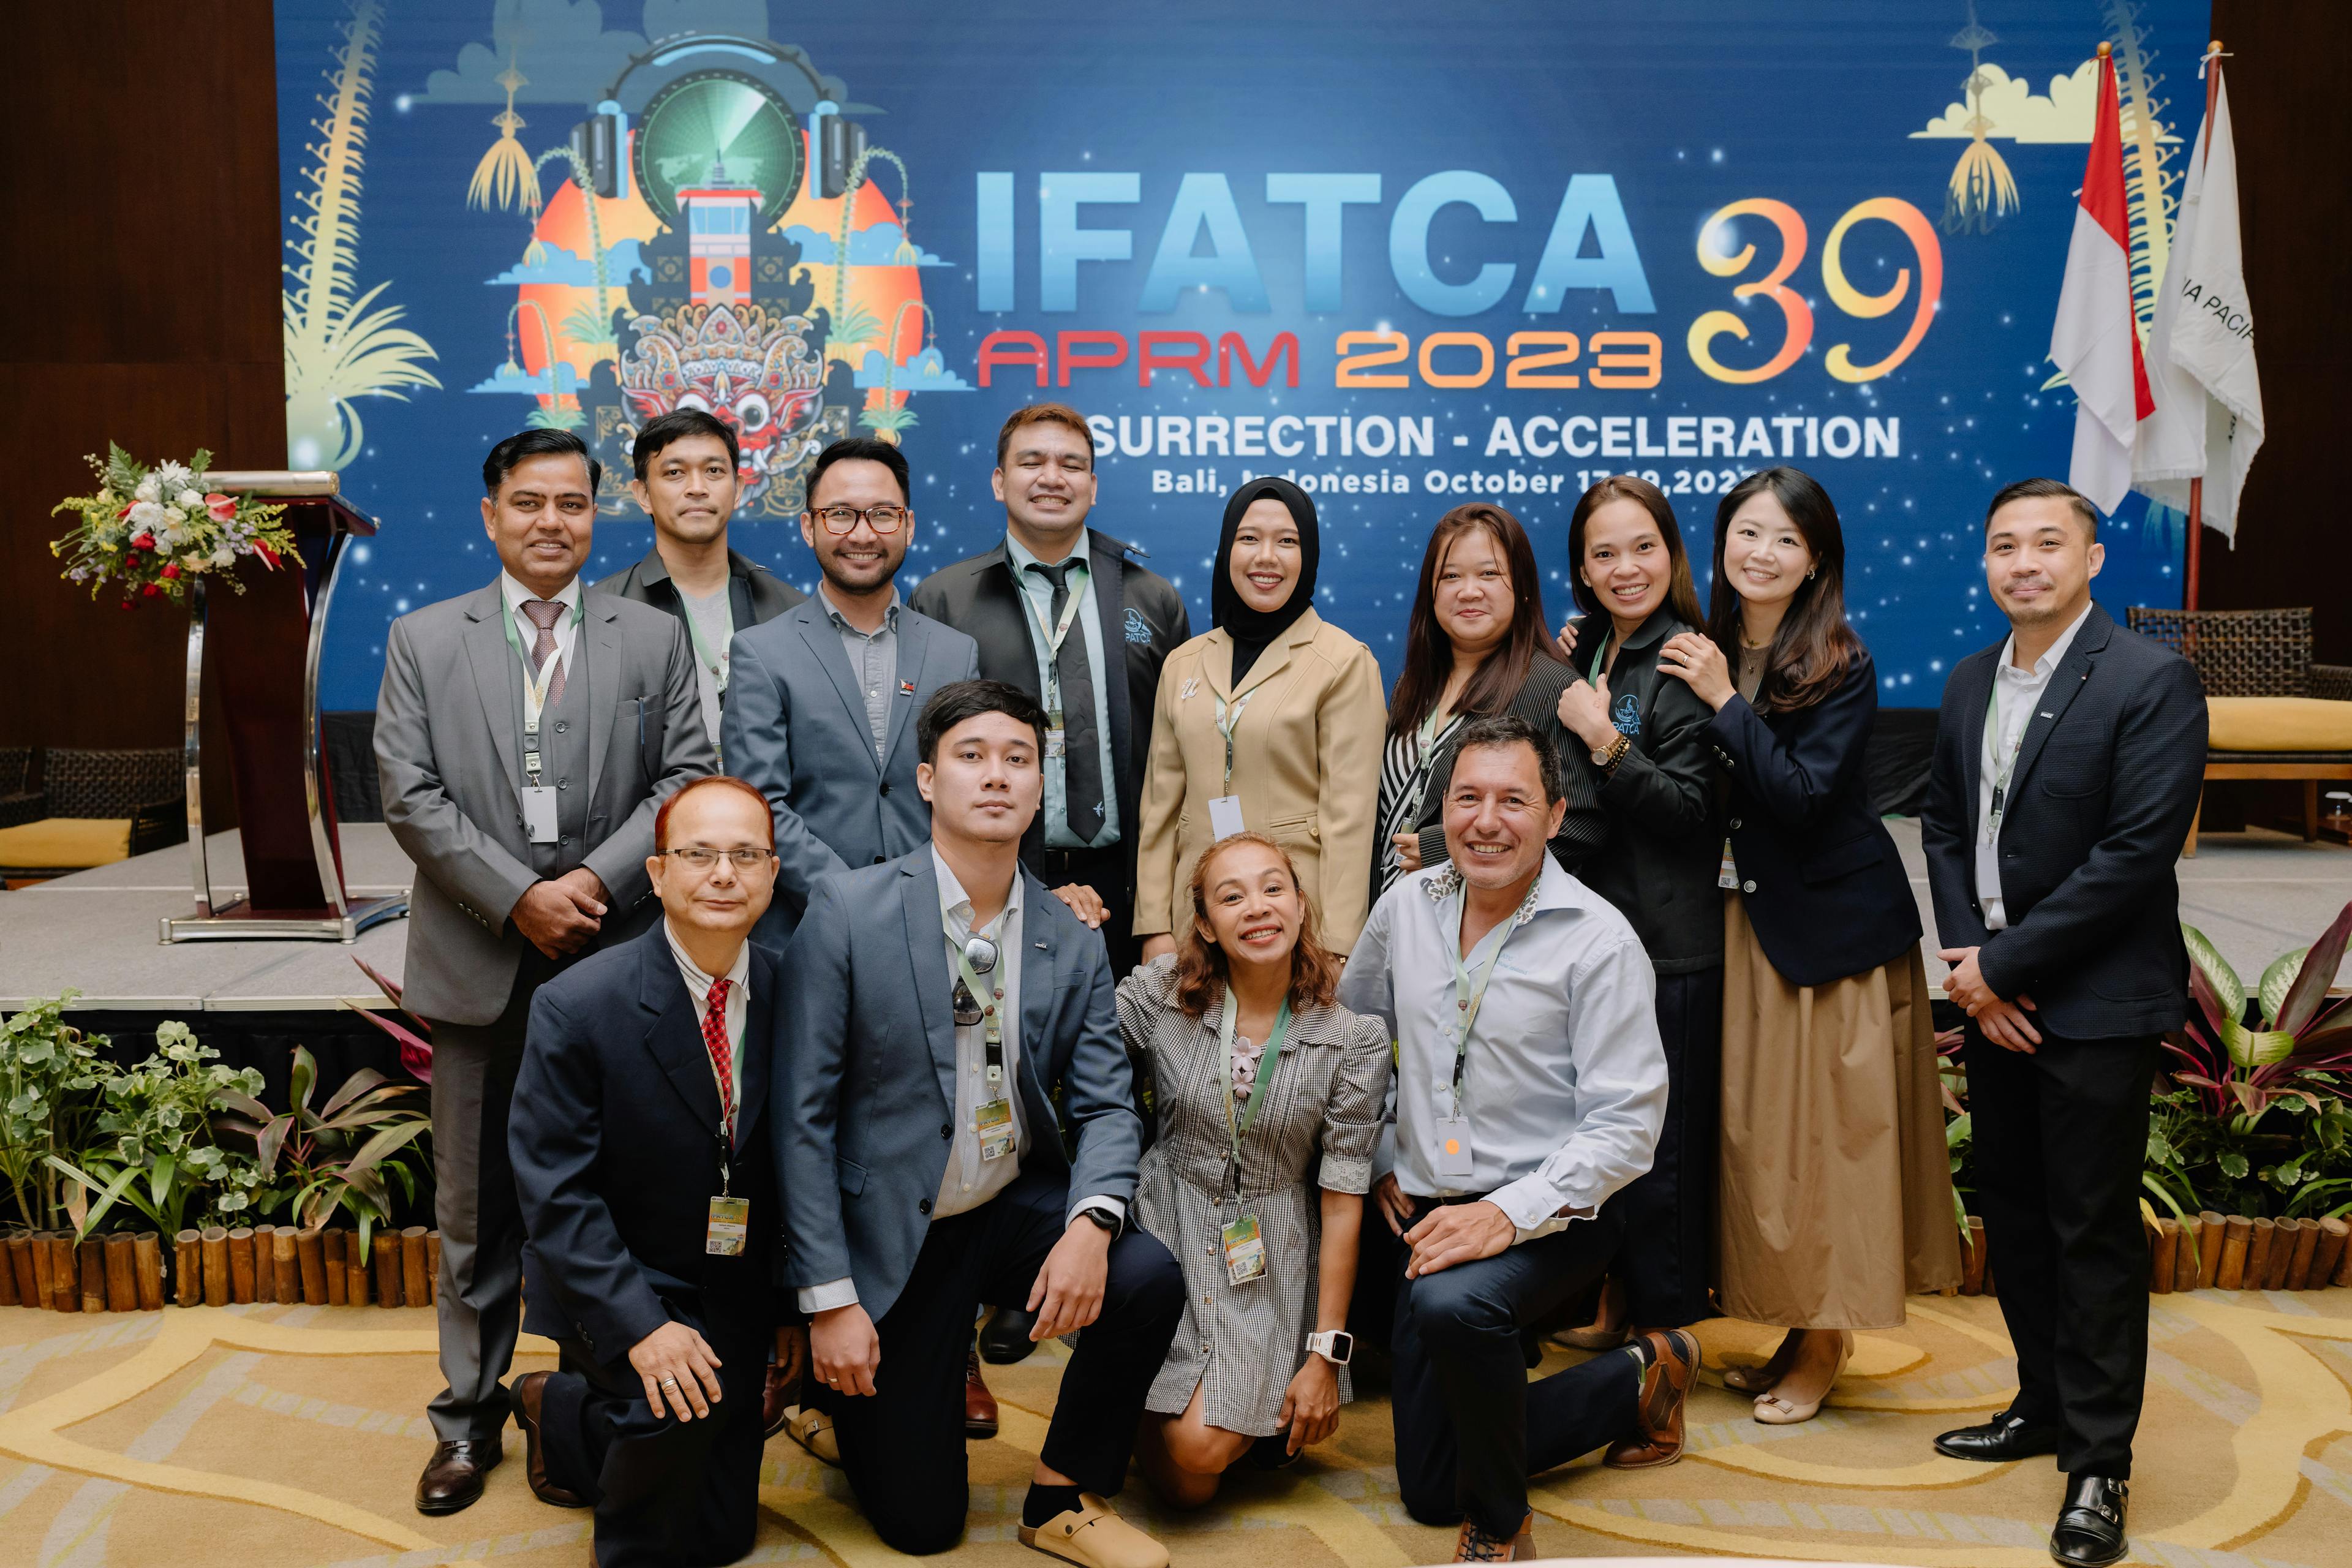 PATCA Delegates at Bali, Indonesia